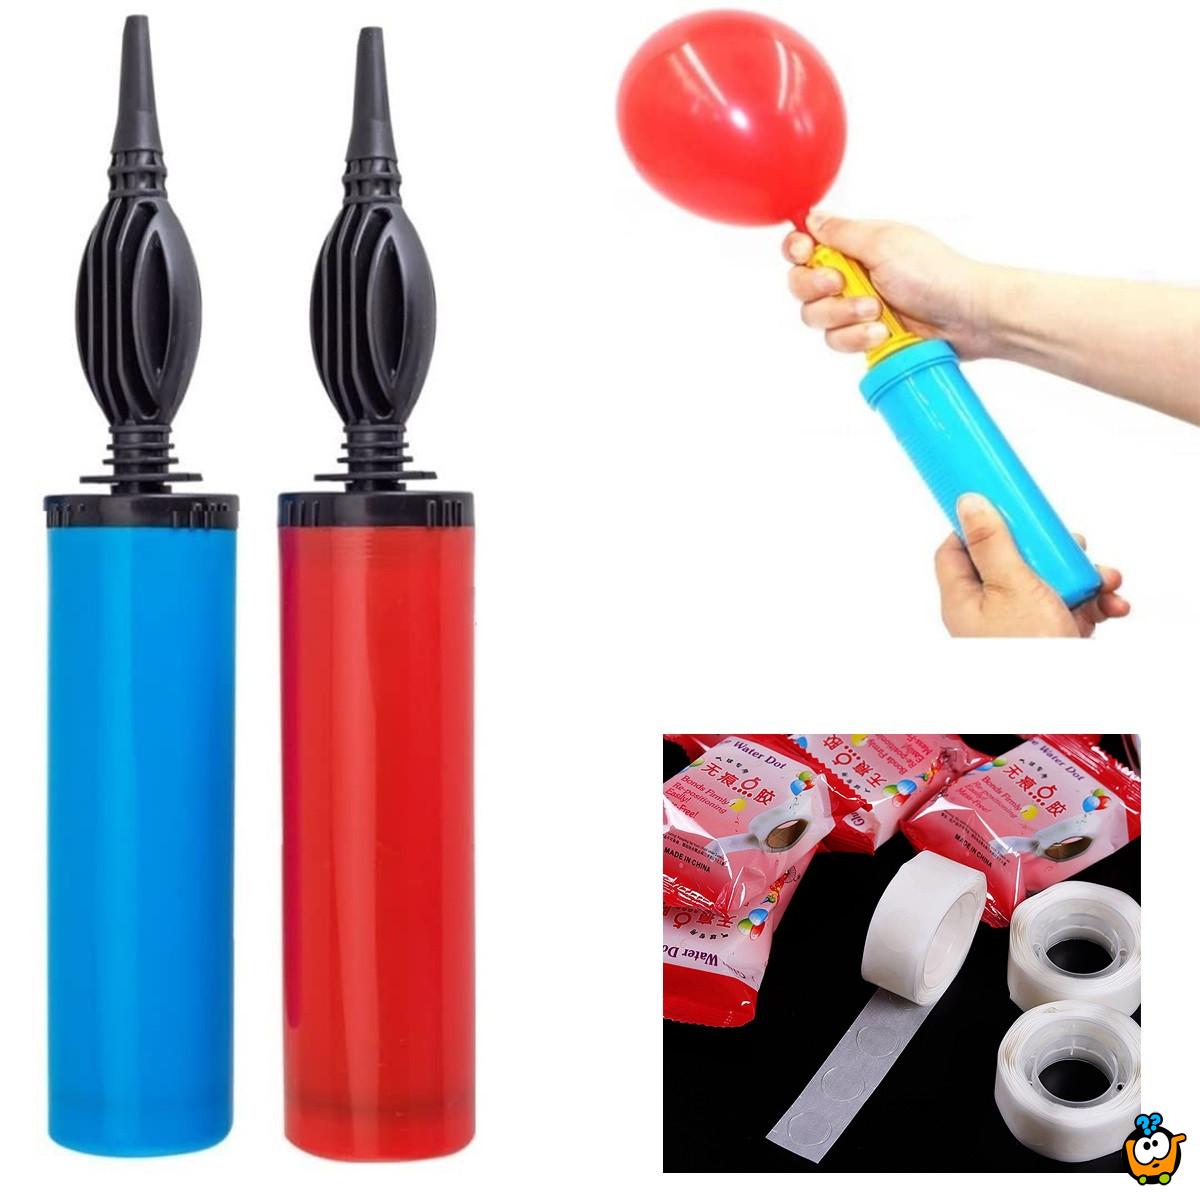 Set za naduvavanje i aranžiranje balona - Pumpa i lepljive trakice